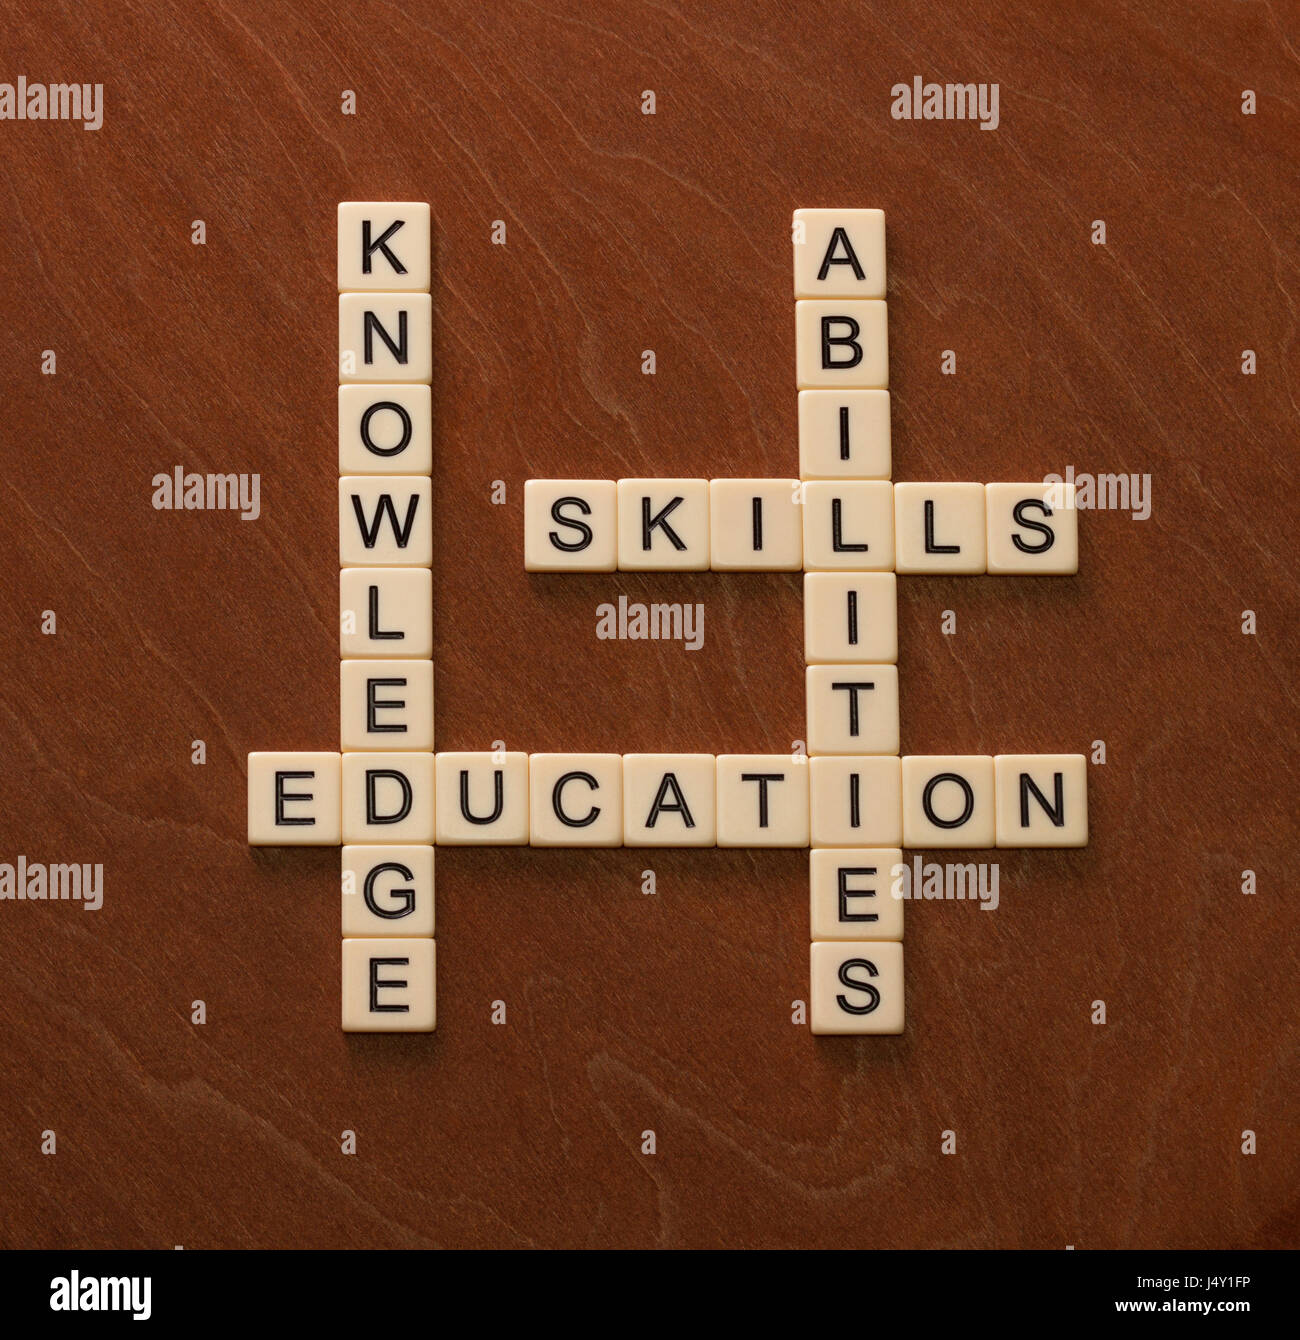 Kreuzworträtsel mit Worten Fertigkeiten, Fähigkeiten, wissen und Bildung. Learning-Konzepts. Elfenbein Fliesen mit Großbuchstaben auf Mahagoni Brett. Stockfoto